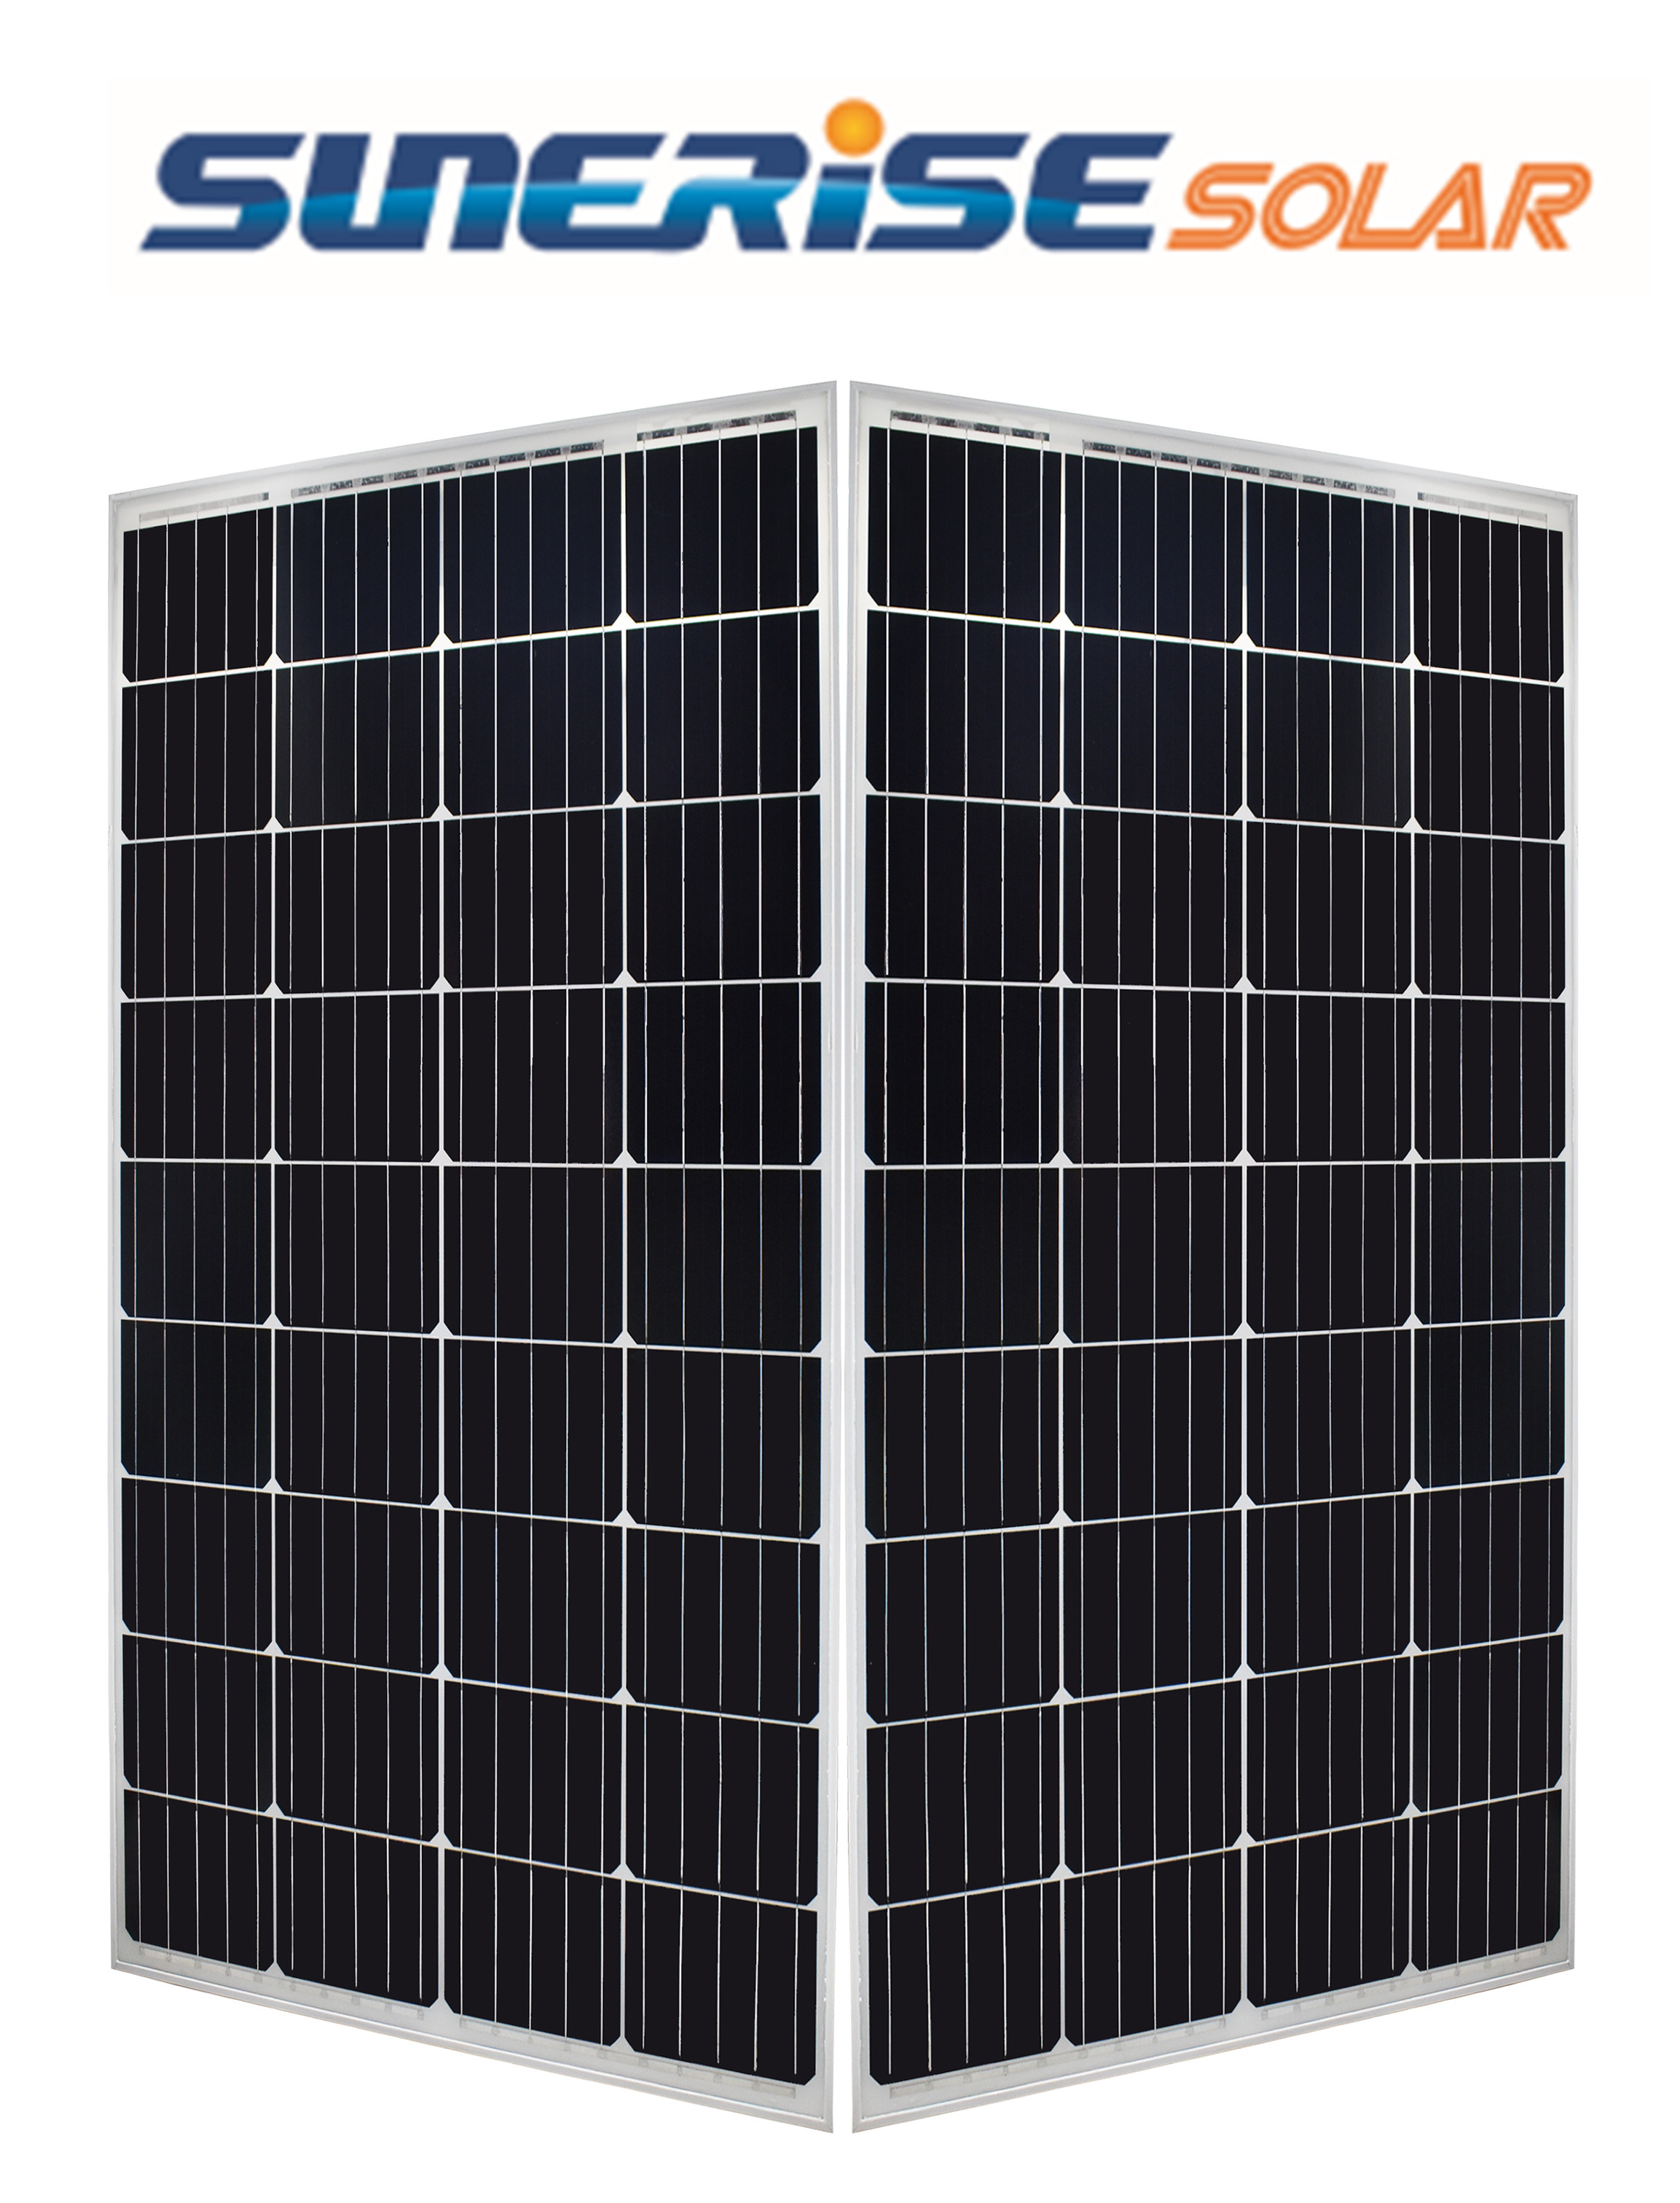 7KG 18V Solar Panel